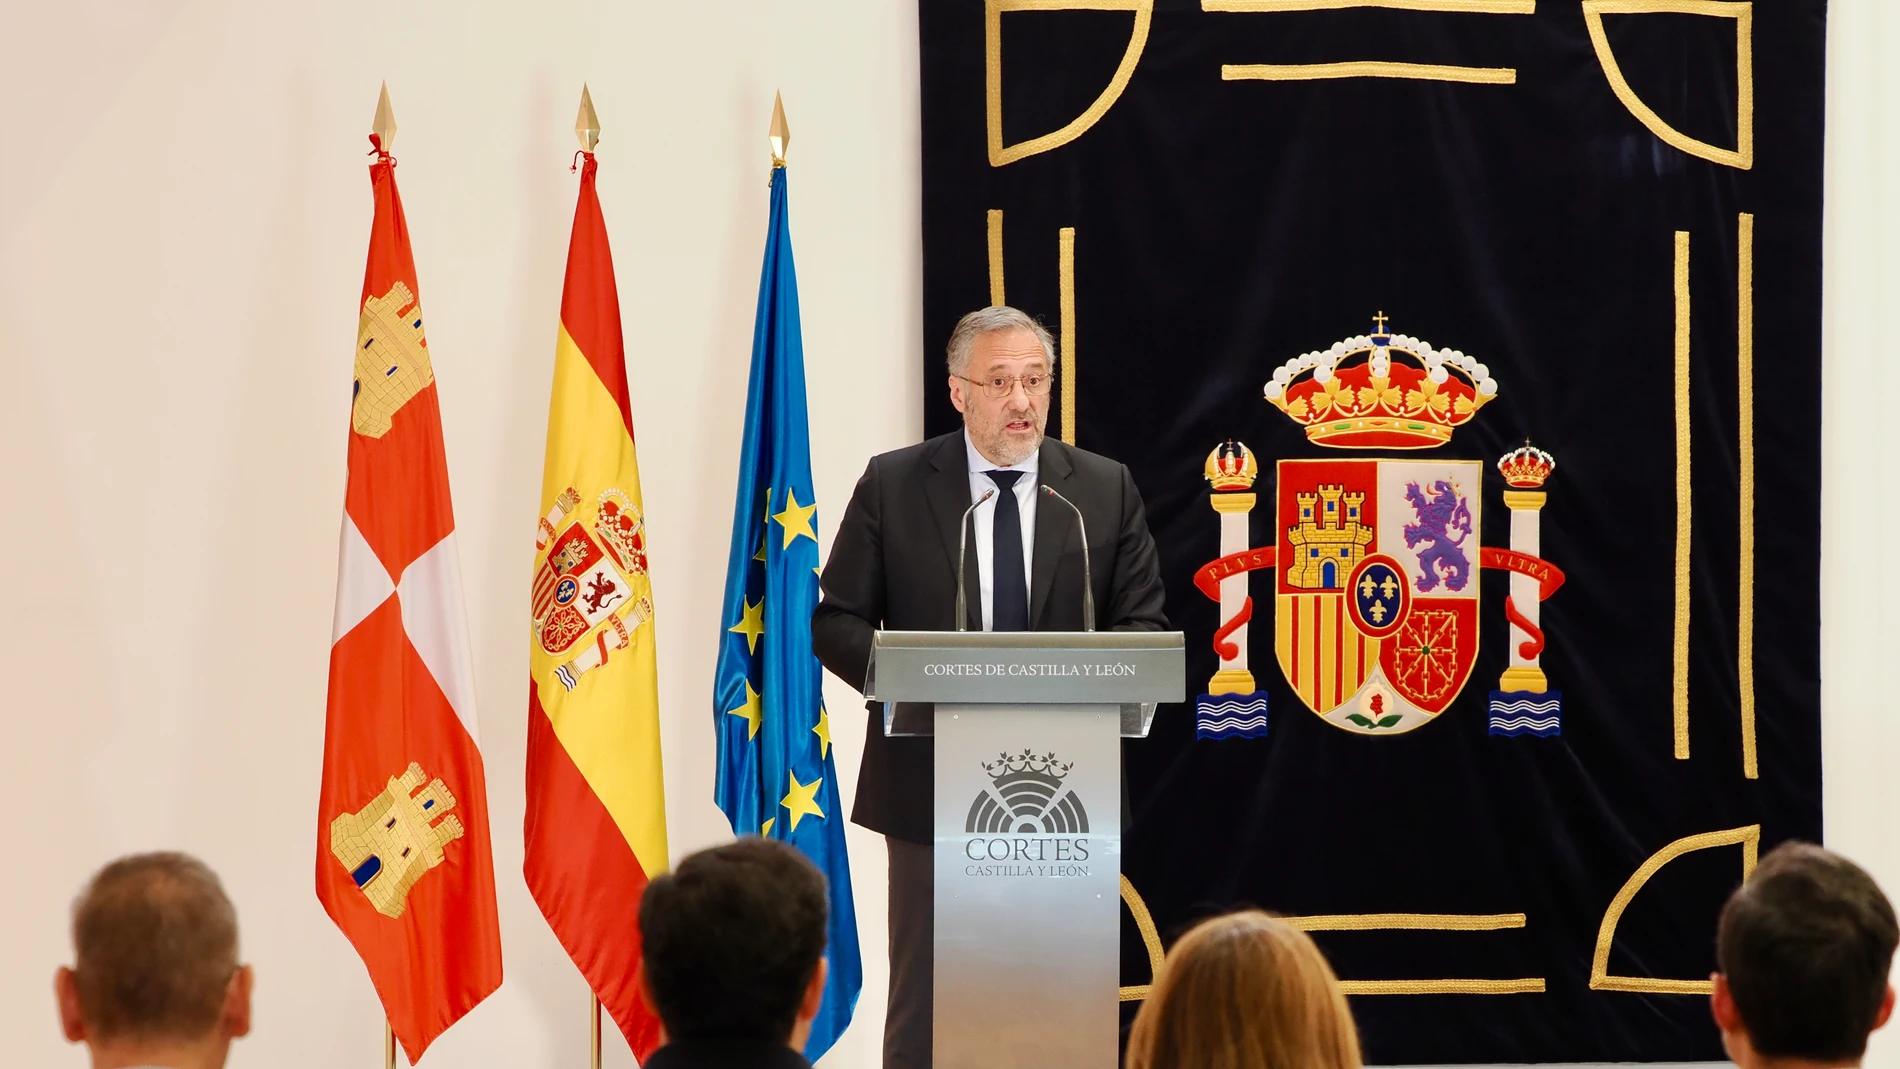 El presidente de las Cortes de Castilla y León, Carlos Pollán, durante el anuncio de la entrega de las Medallas de Oro